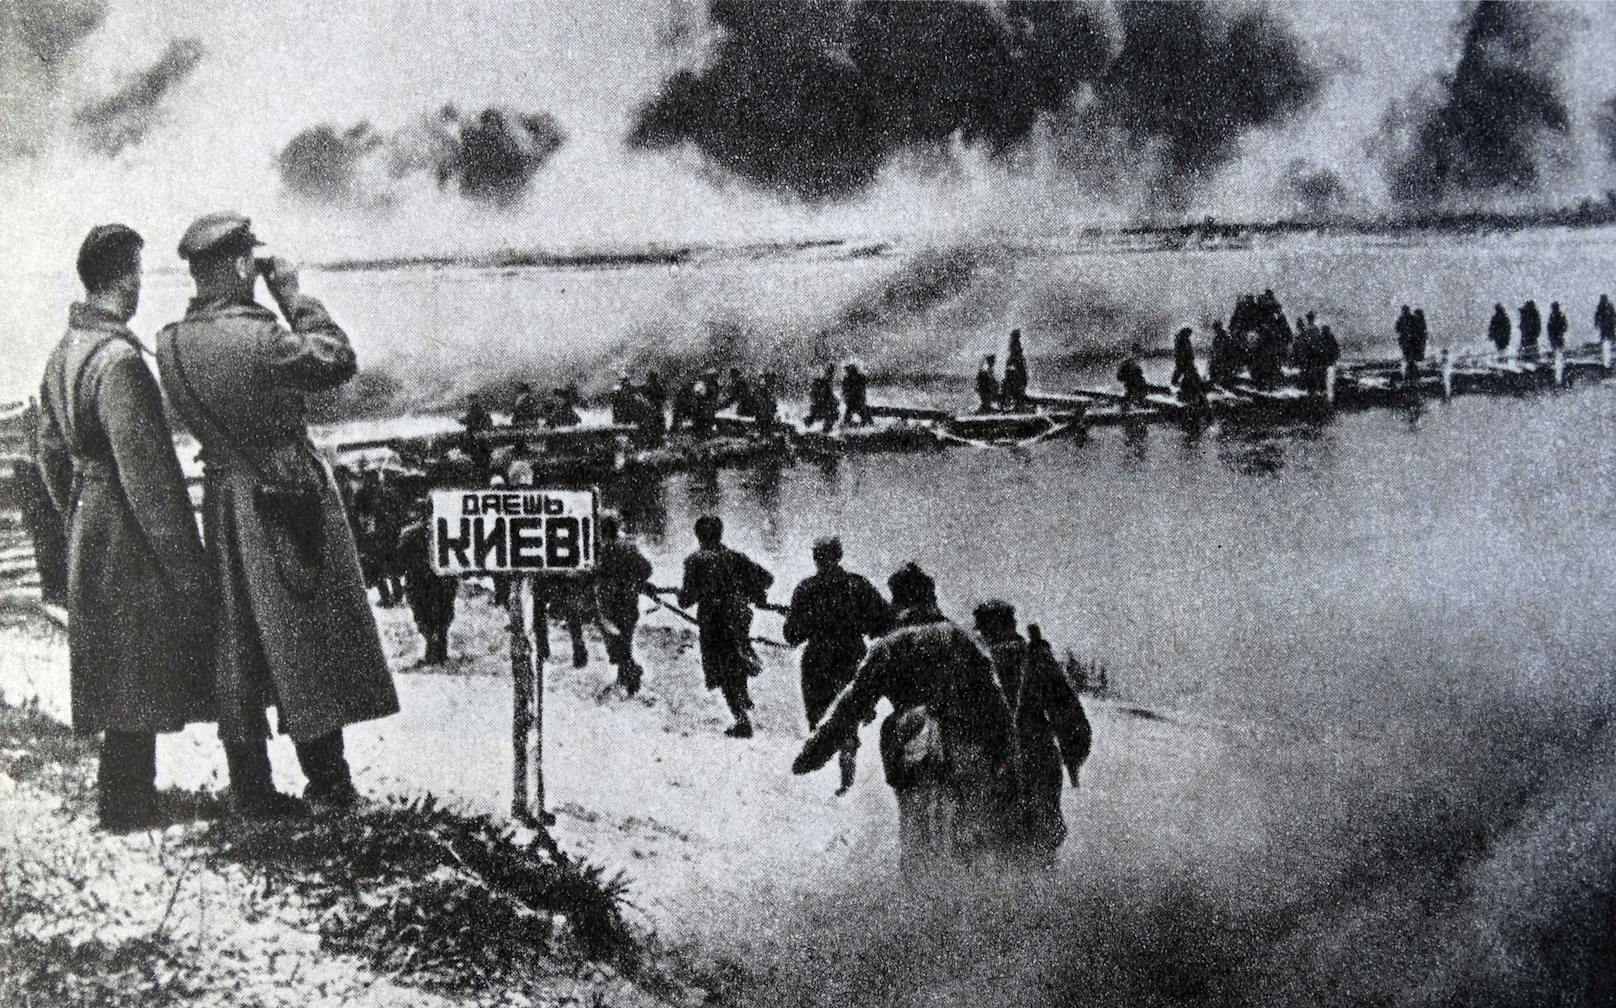 Rund vier Millionen Soldaten kämpften in Summe auf Seiten der Wehrmacht und der Sowjetunion um die Kontrolle des mächtigen Flusses.